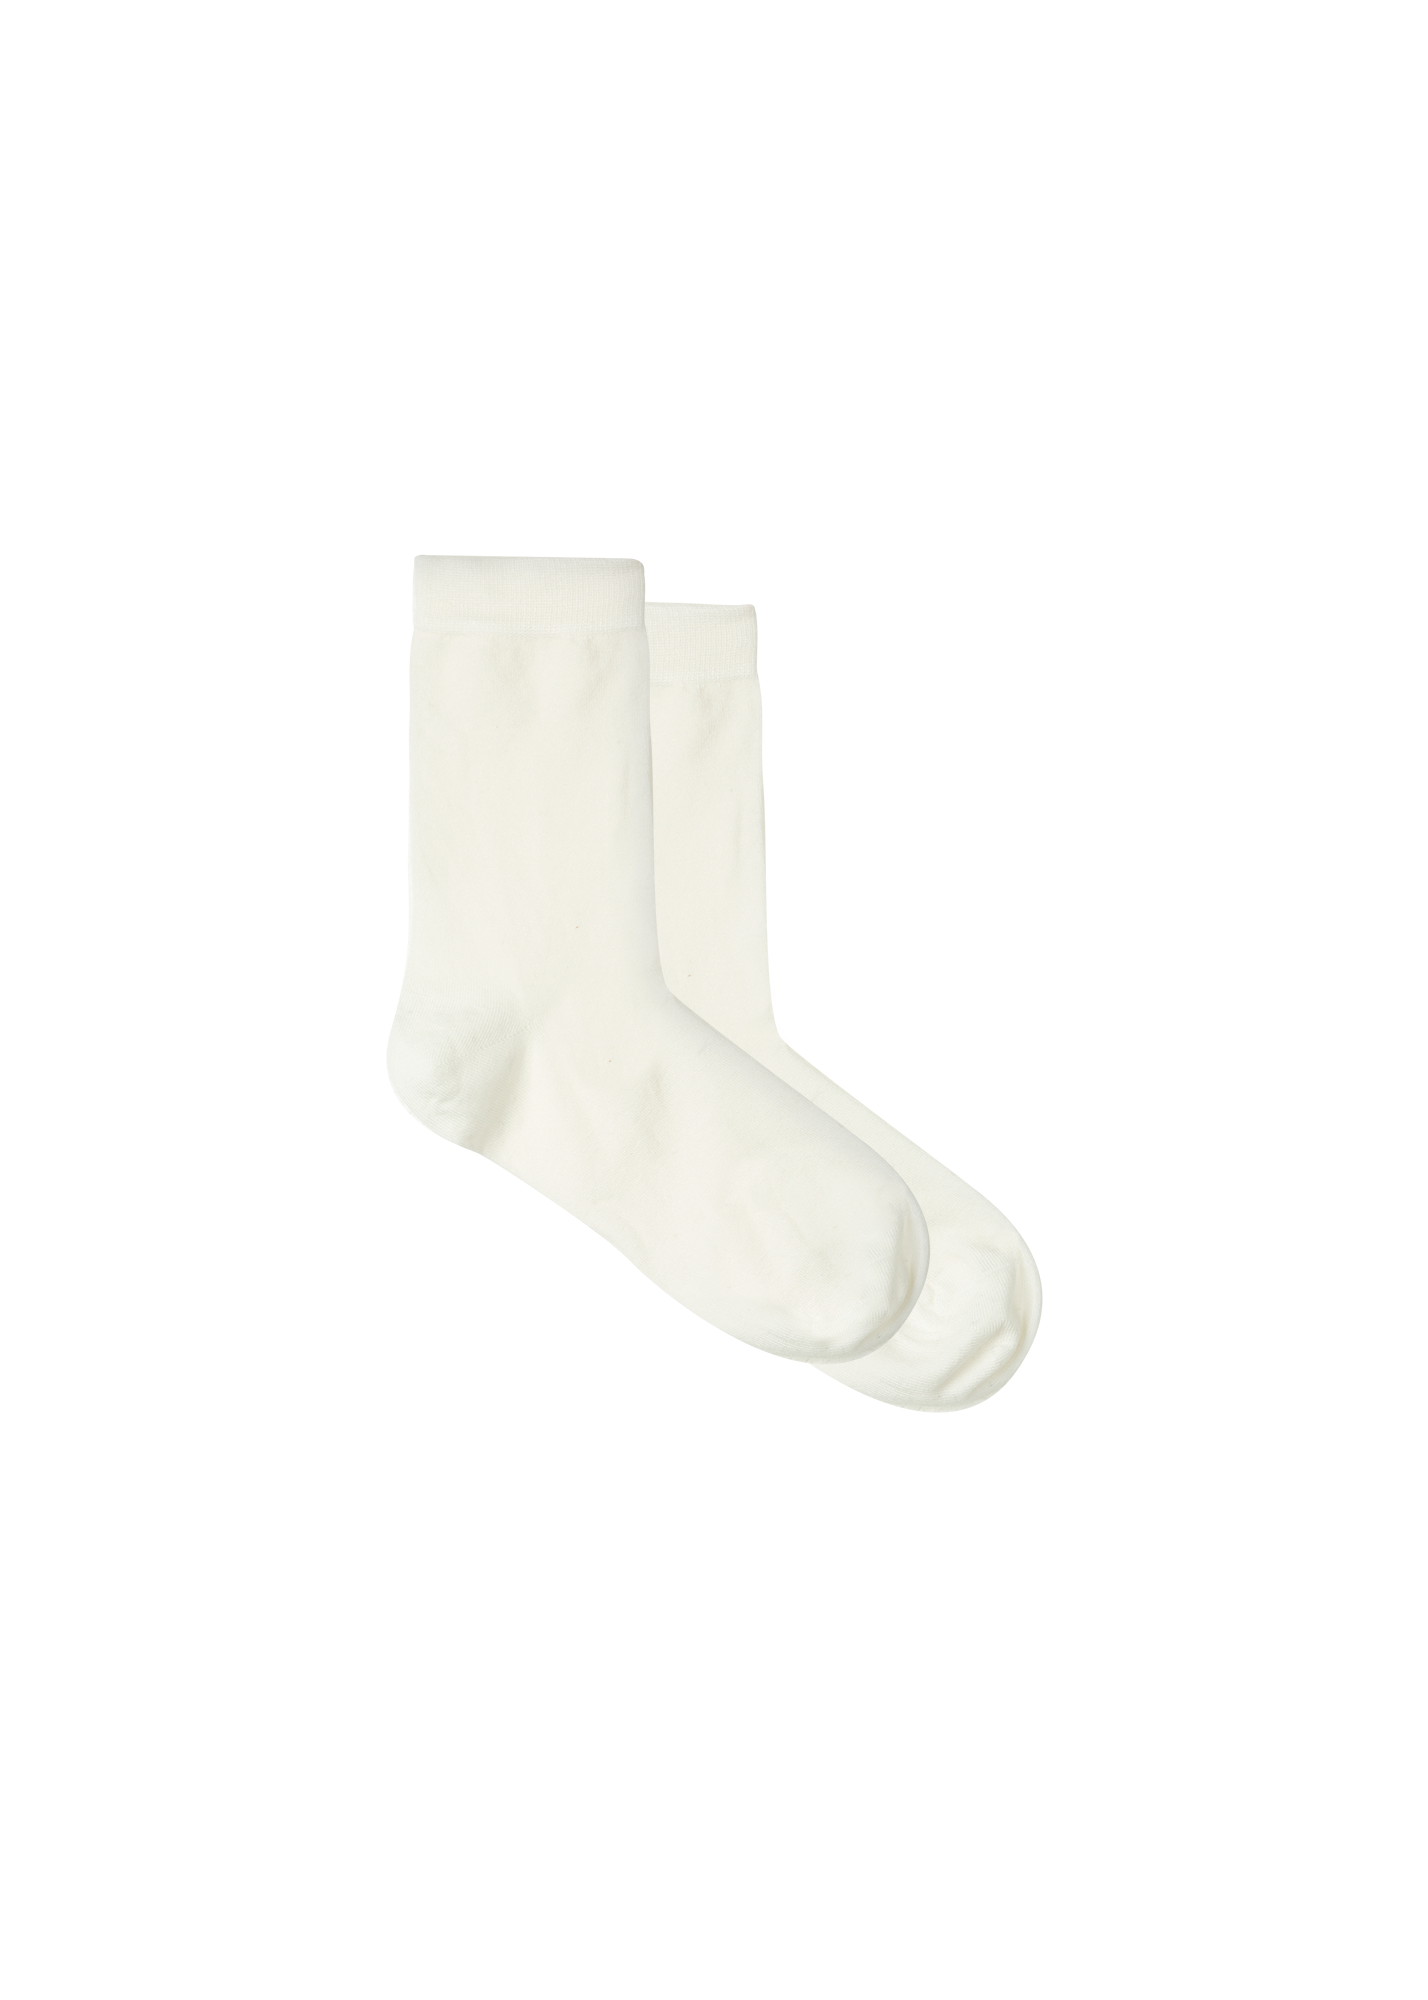 Cashmere blend socks